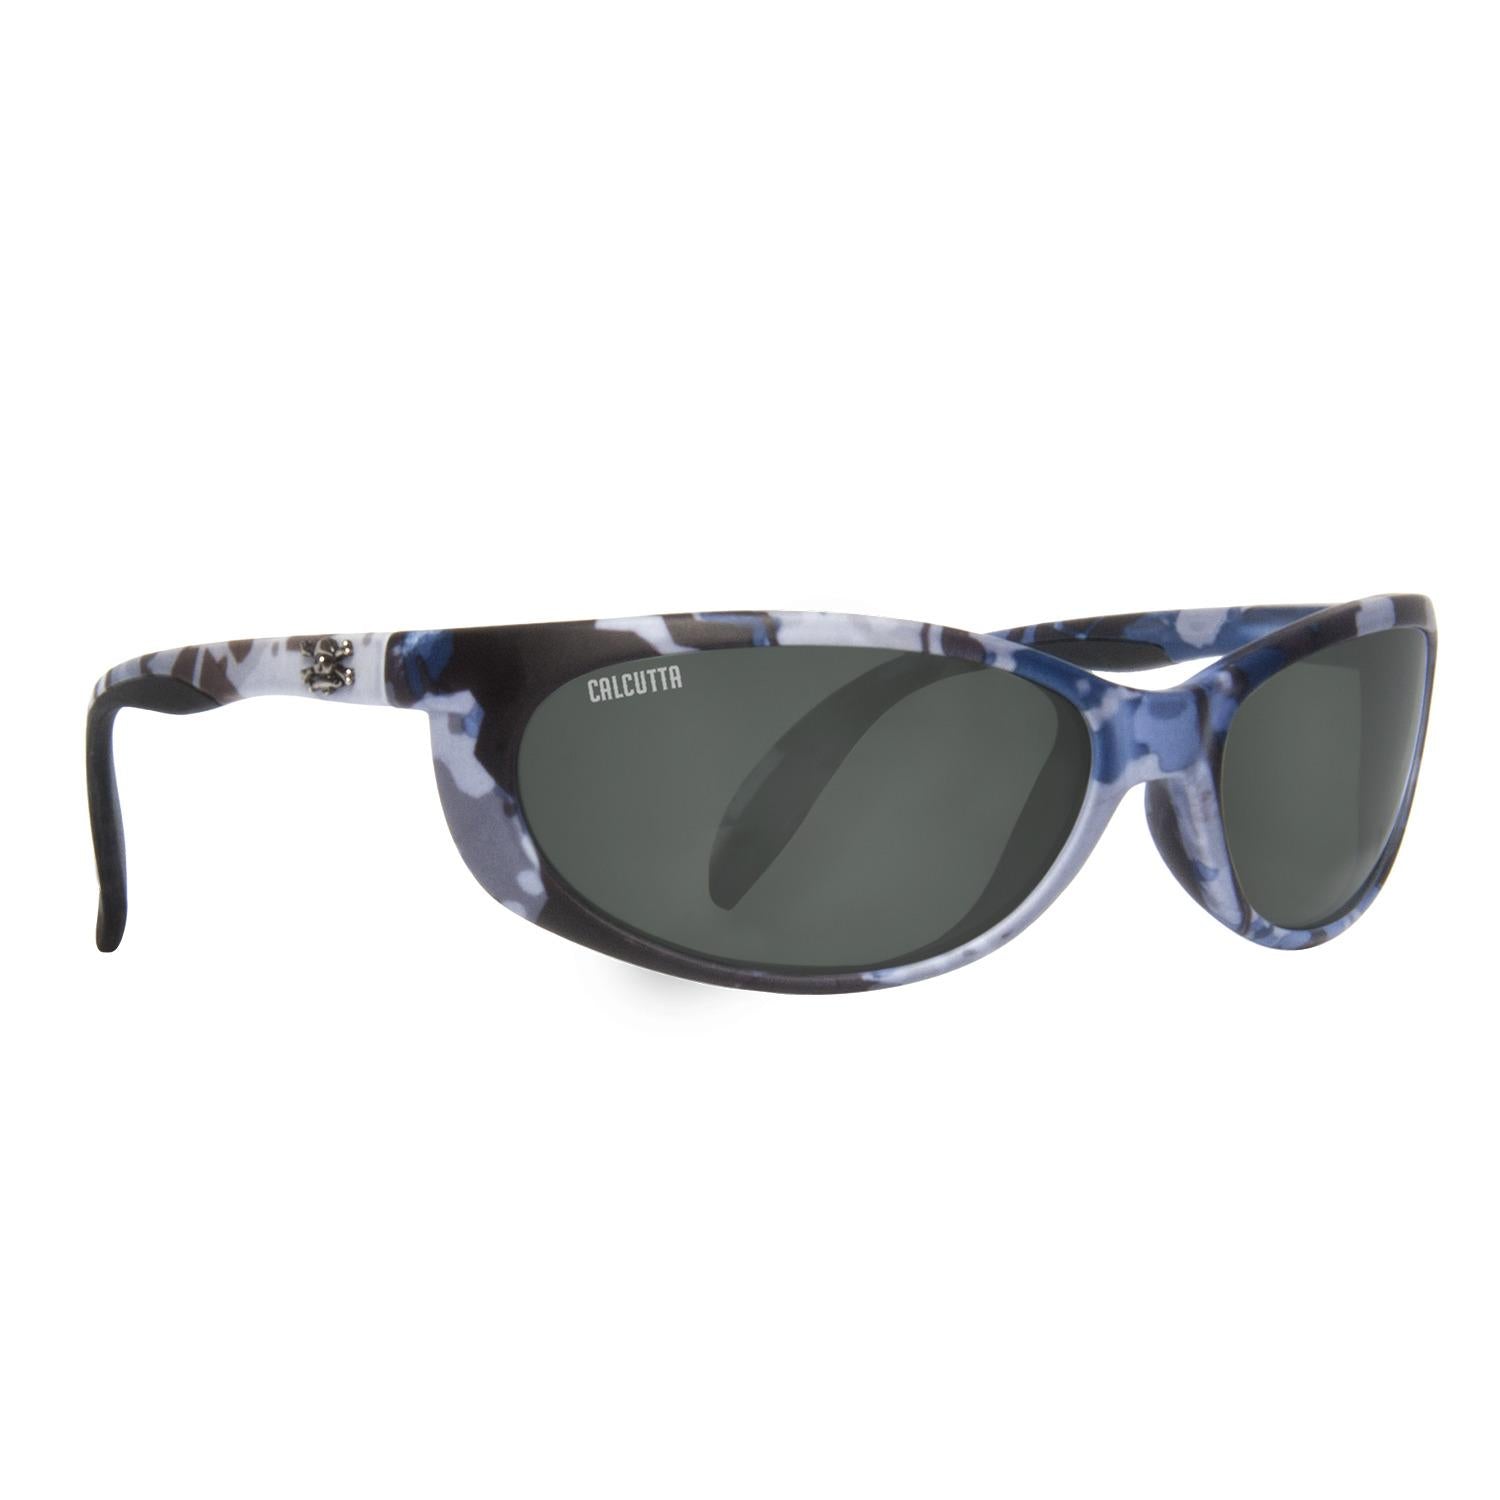 Calcutta Smoker Polarized Sunglasses